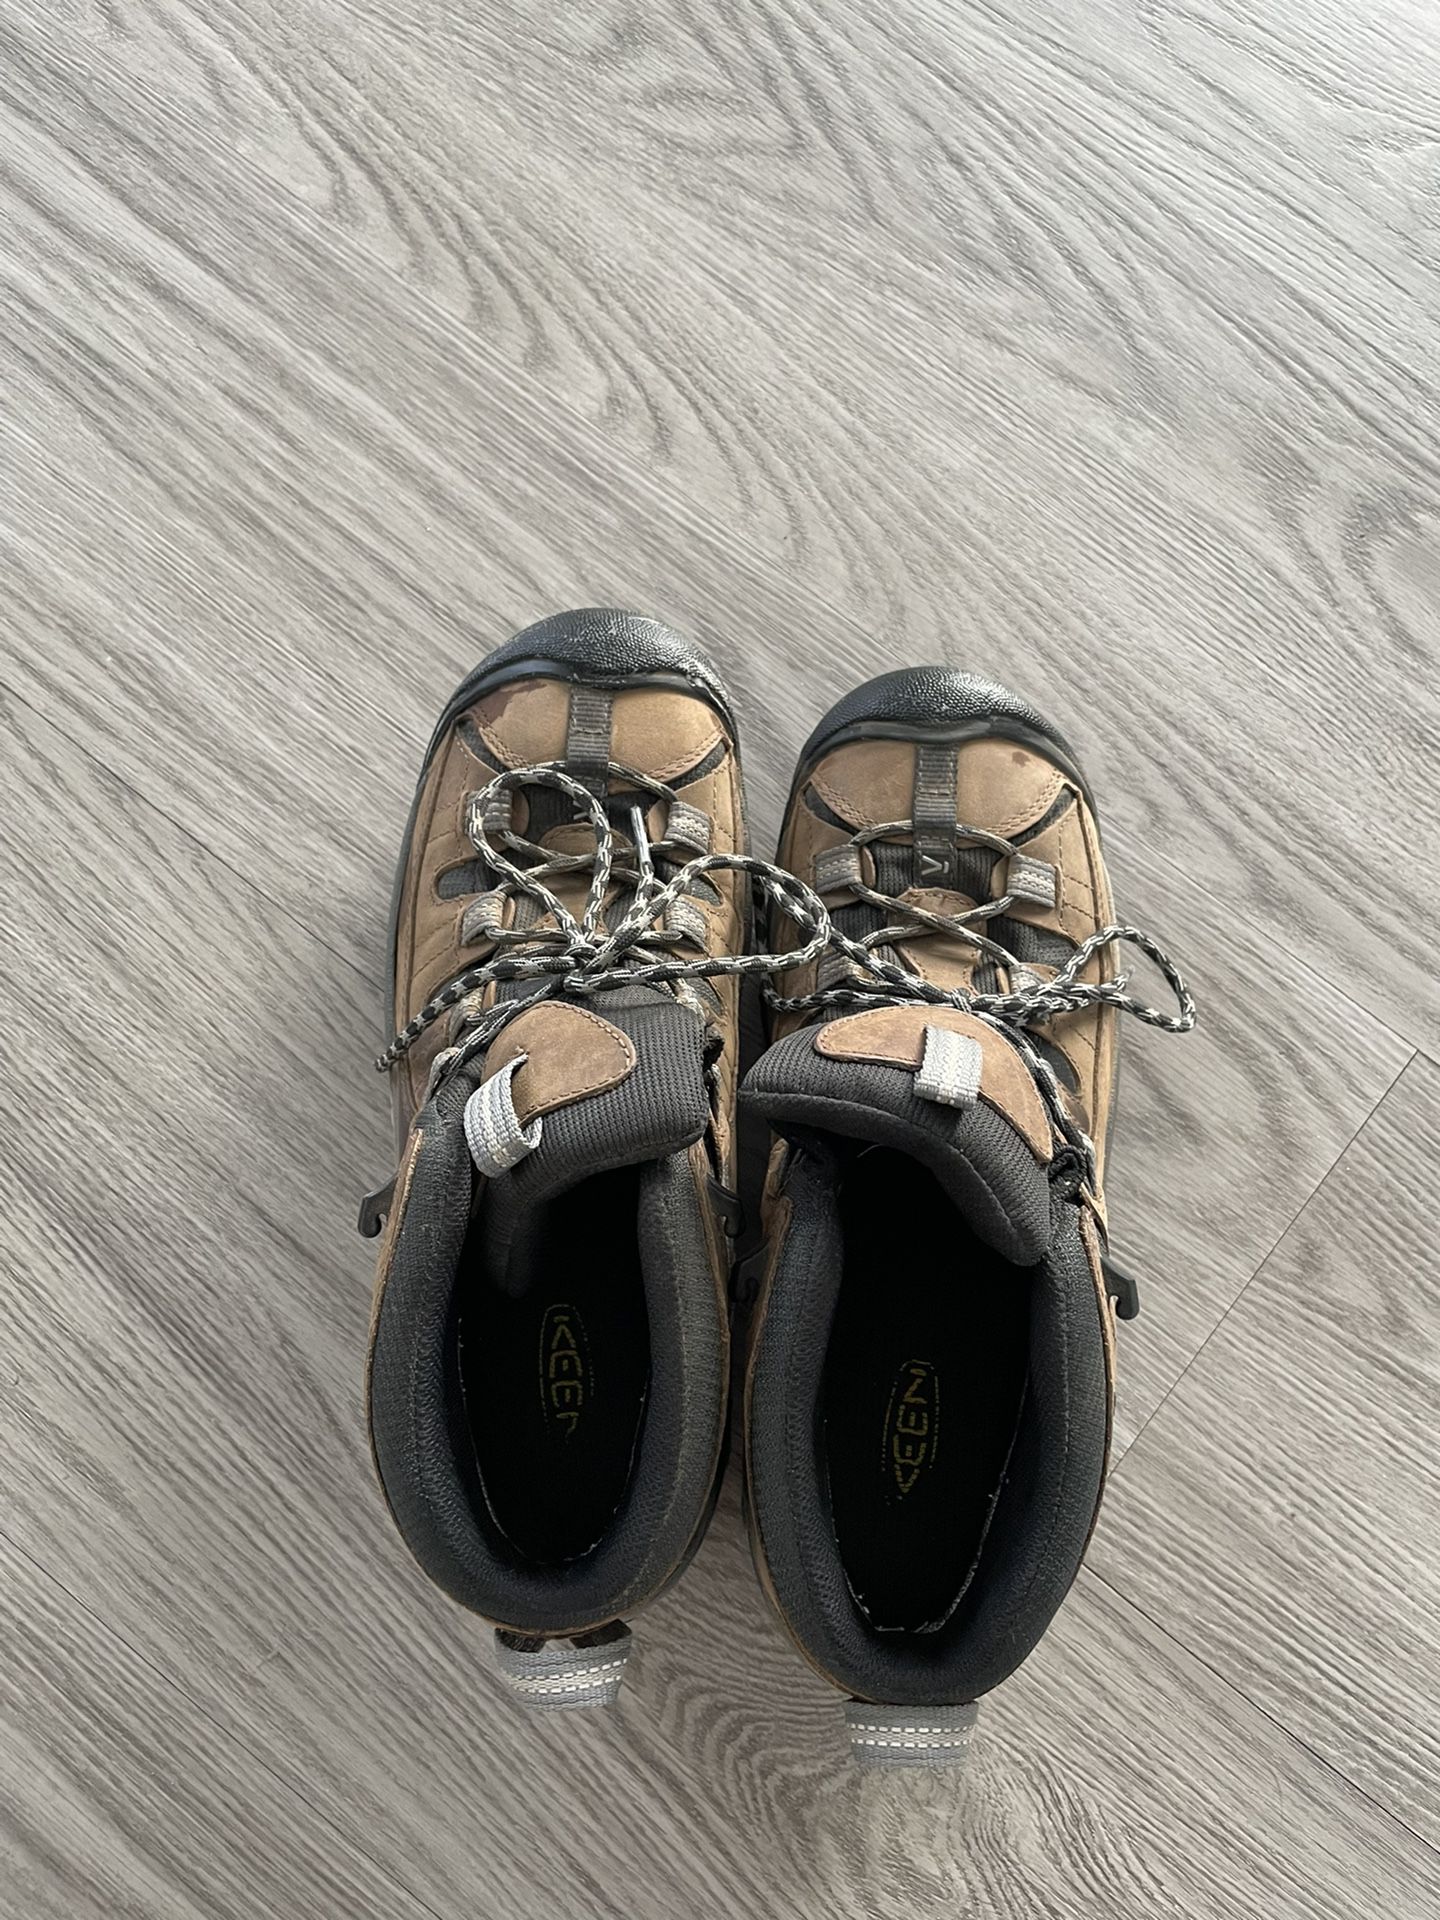 Keen footwear mens waterproof hiking boots US 9 like new original $180